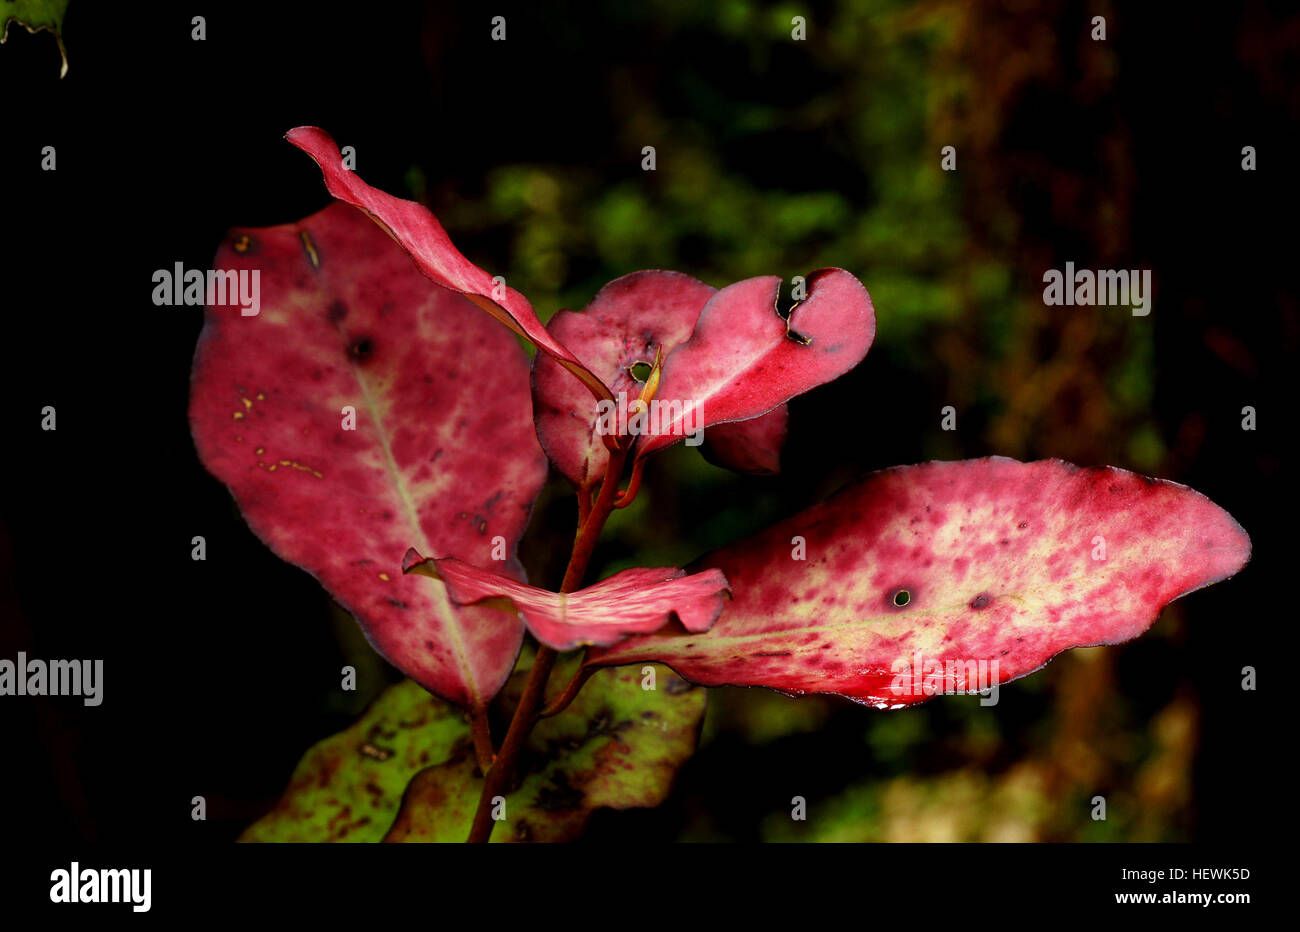 Die native New Zealand Pfefferbaum ist ein kleiner Strauch mit roten Flecken auf ihren Blättern. Einige sind grün, und einige sind mehr Stärkungszauber oder Beige Farbe, je nachdem, wieviel Sonne die Strauch bekommt. Stockfoto